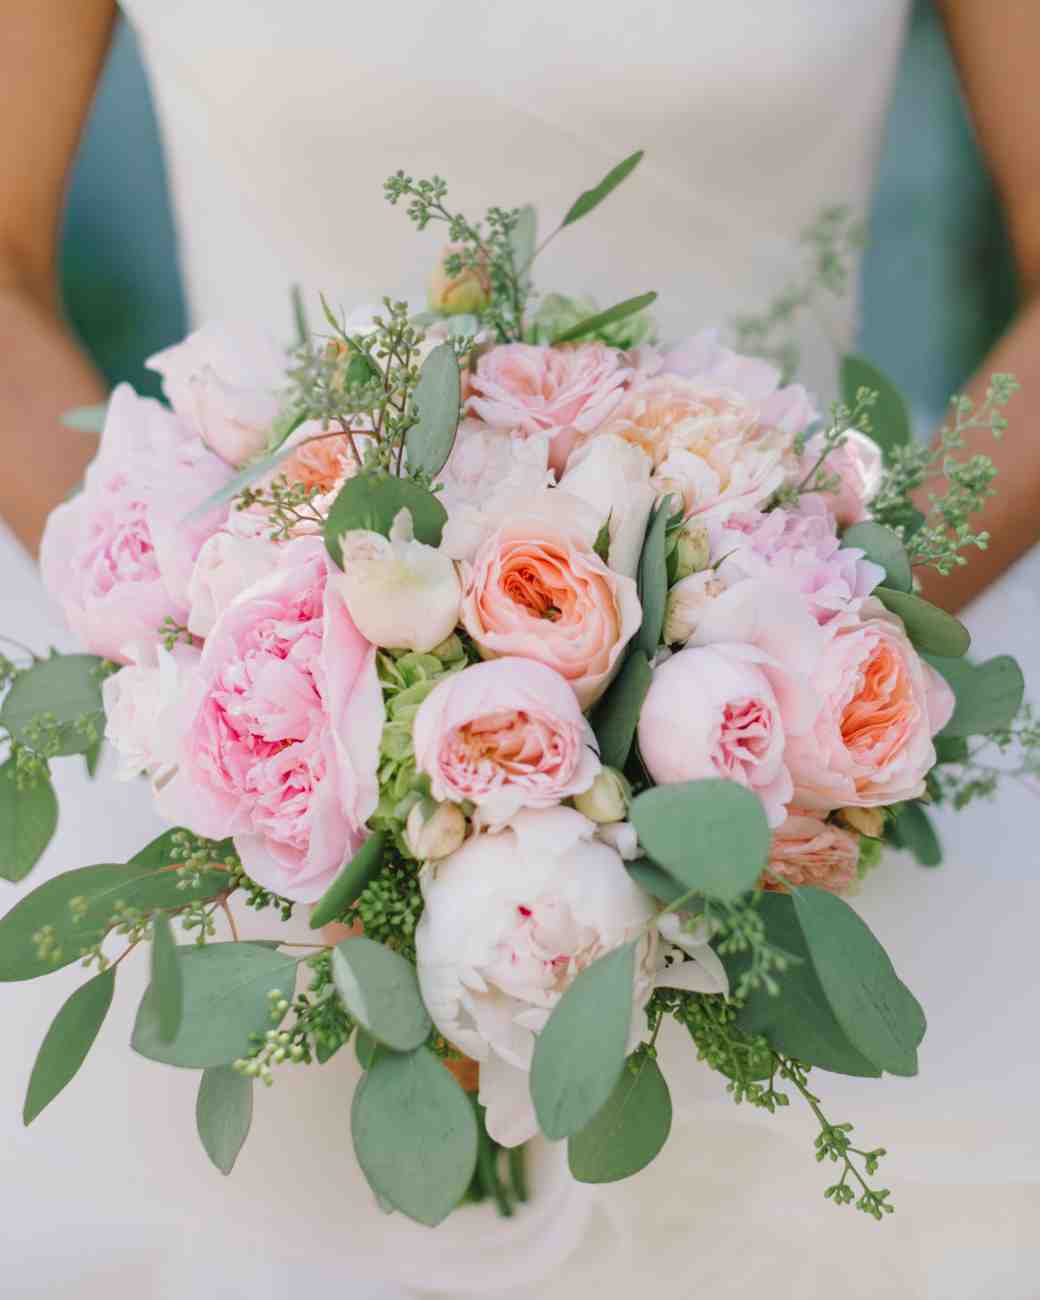 vanessa-joe-wedding-bouquet-7180-s111736-1214_vert.jpg